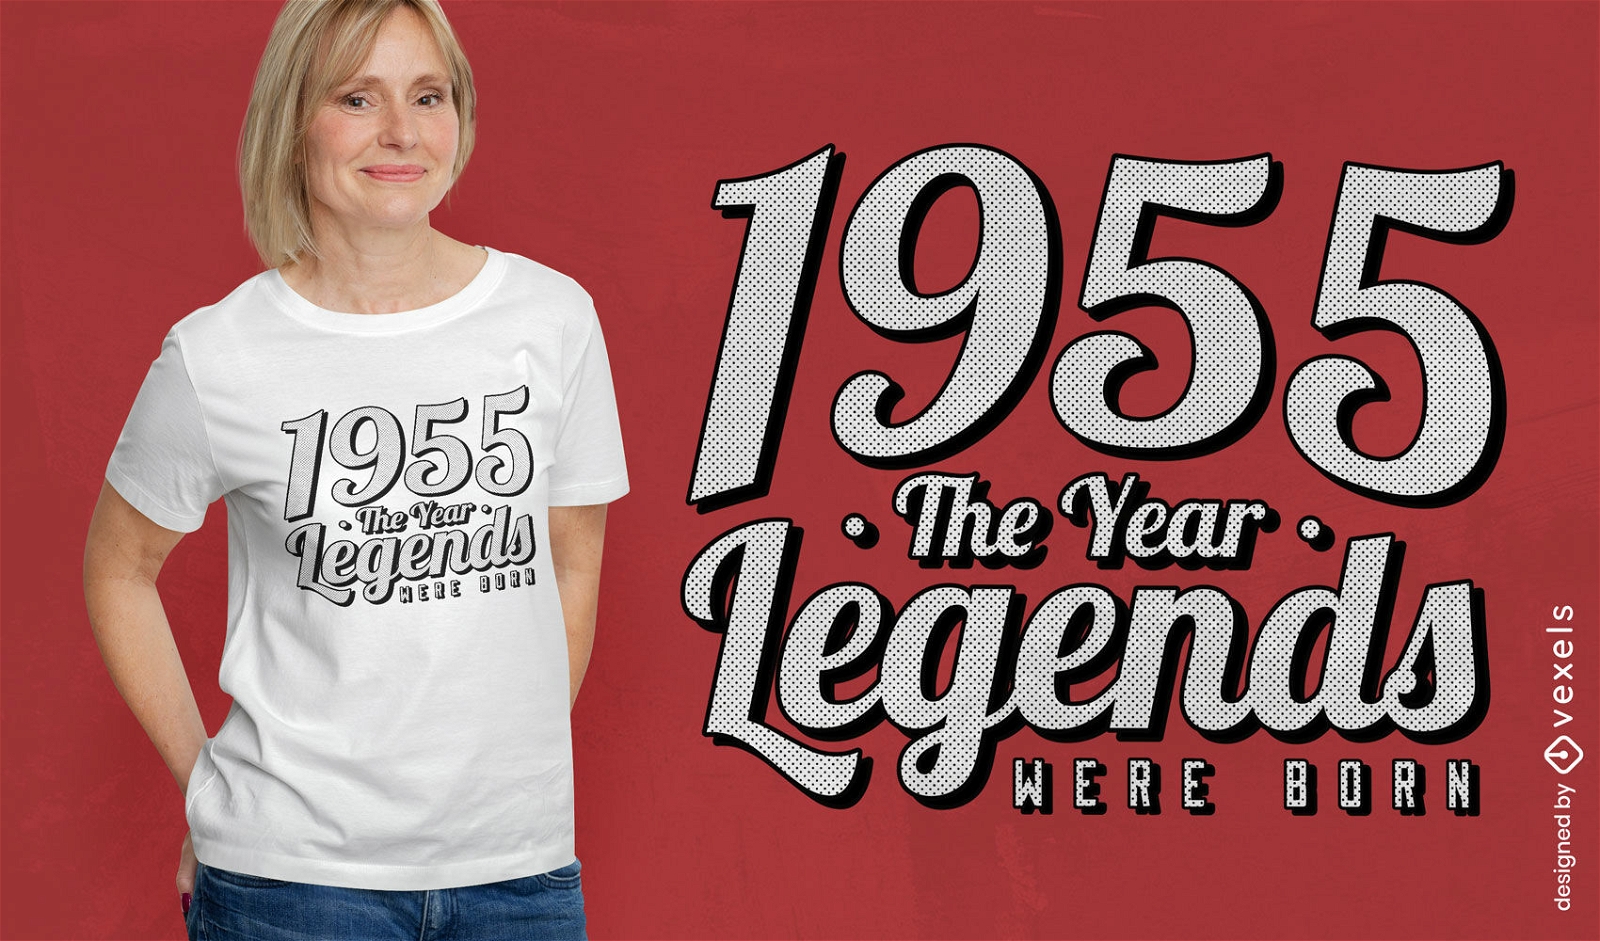 1955 legends lettering t-shirt design